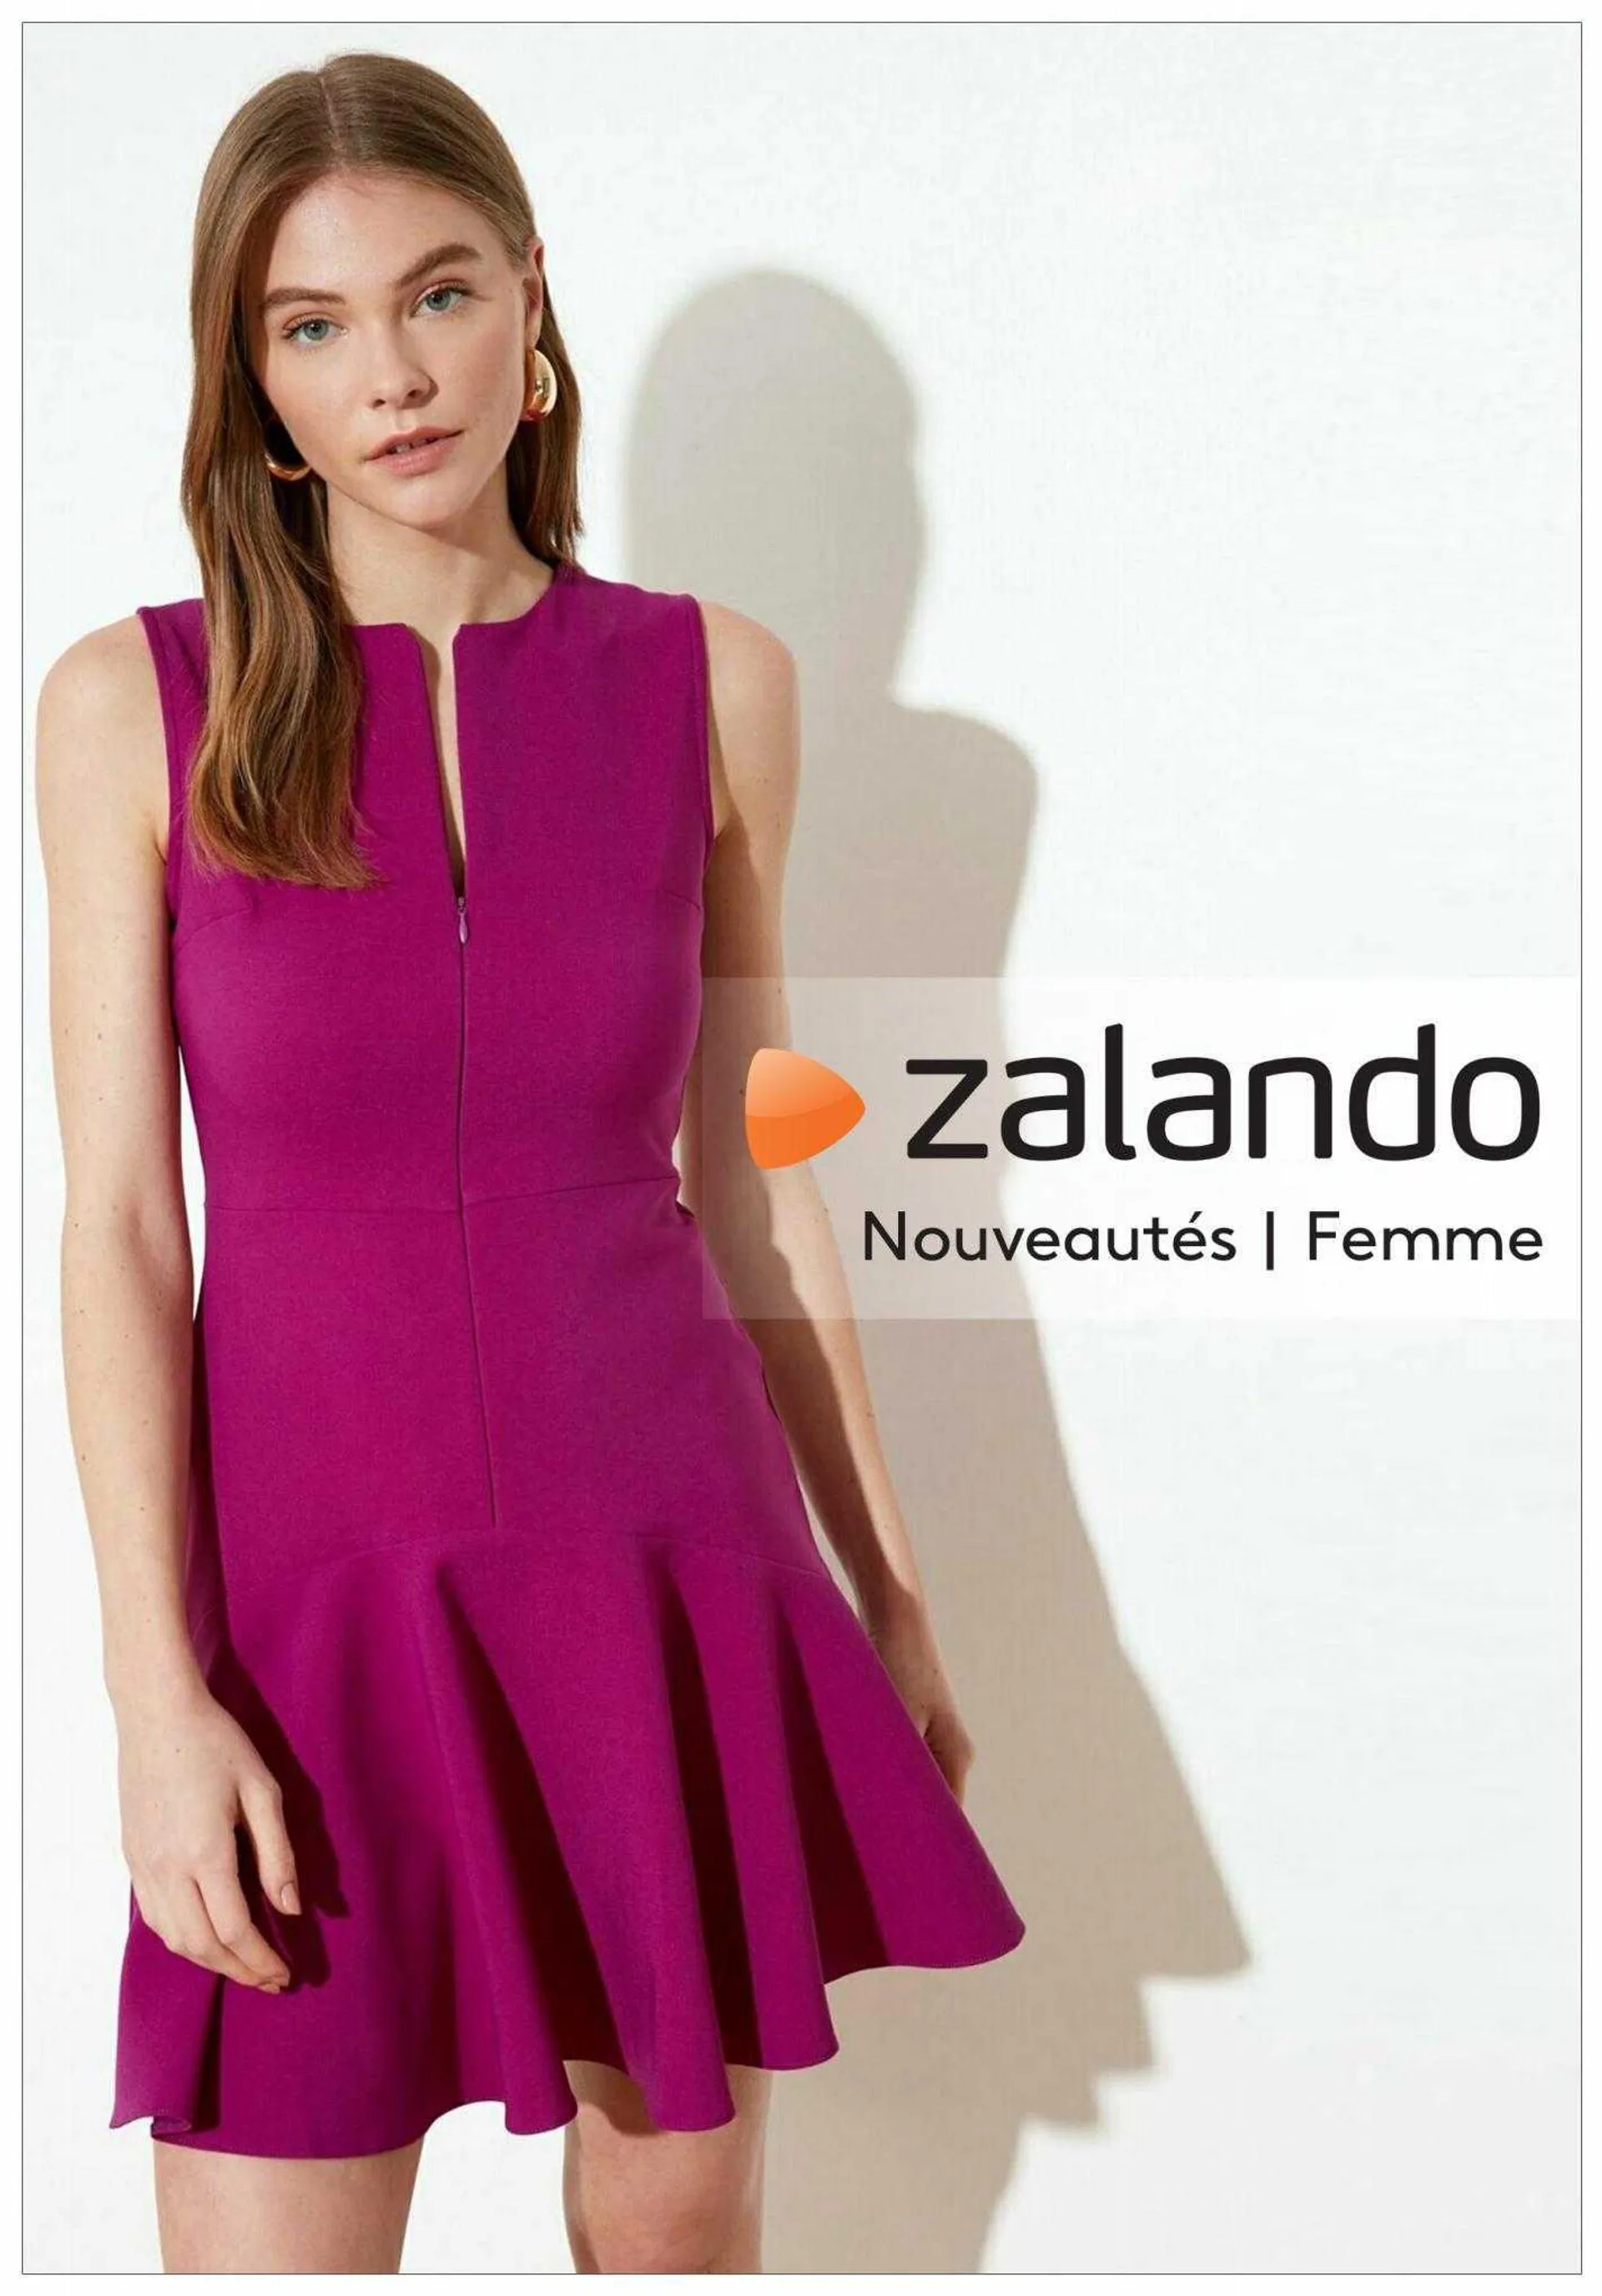 Catalogue Zalando - 1